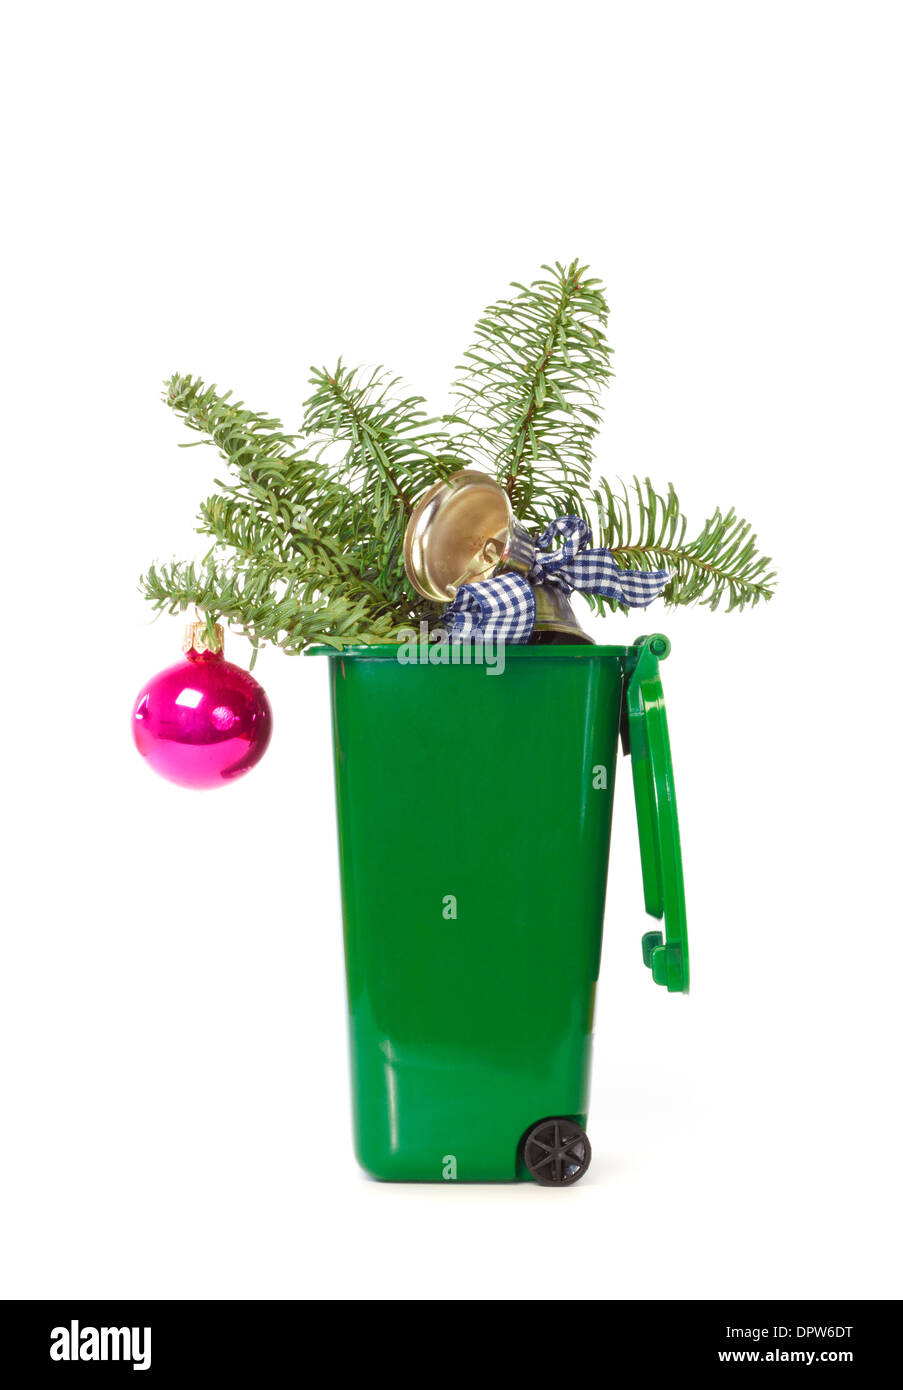 Weihnachtsschmuck im grünen Wheelie bin vor weißem Hintergrund Stockfoto